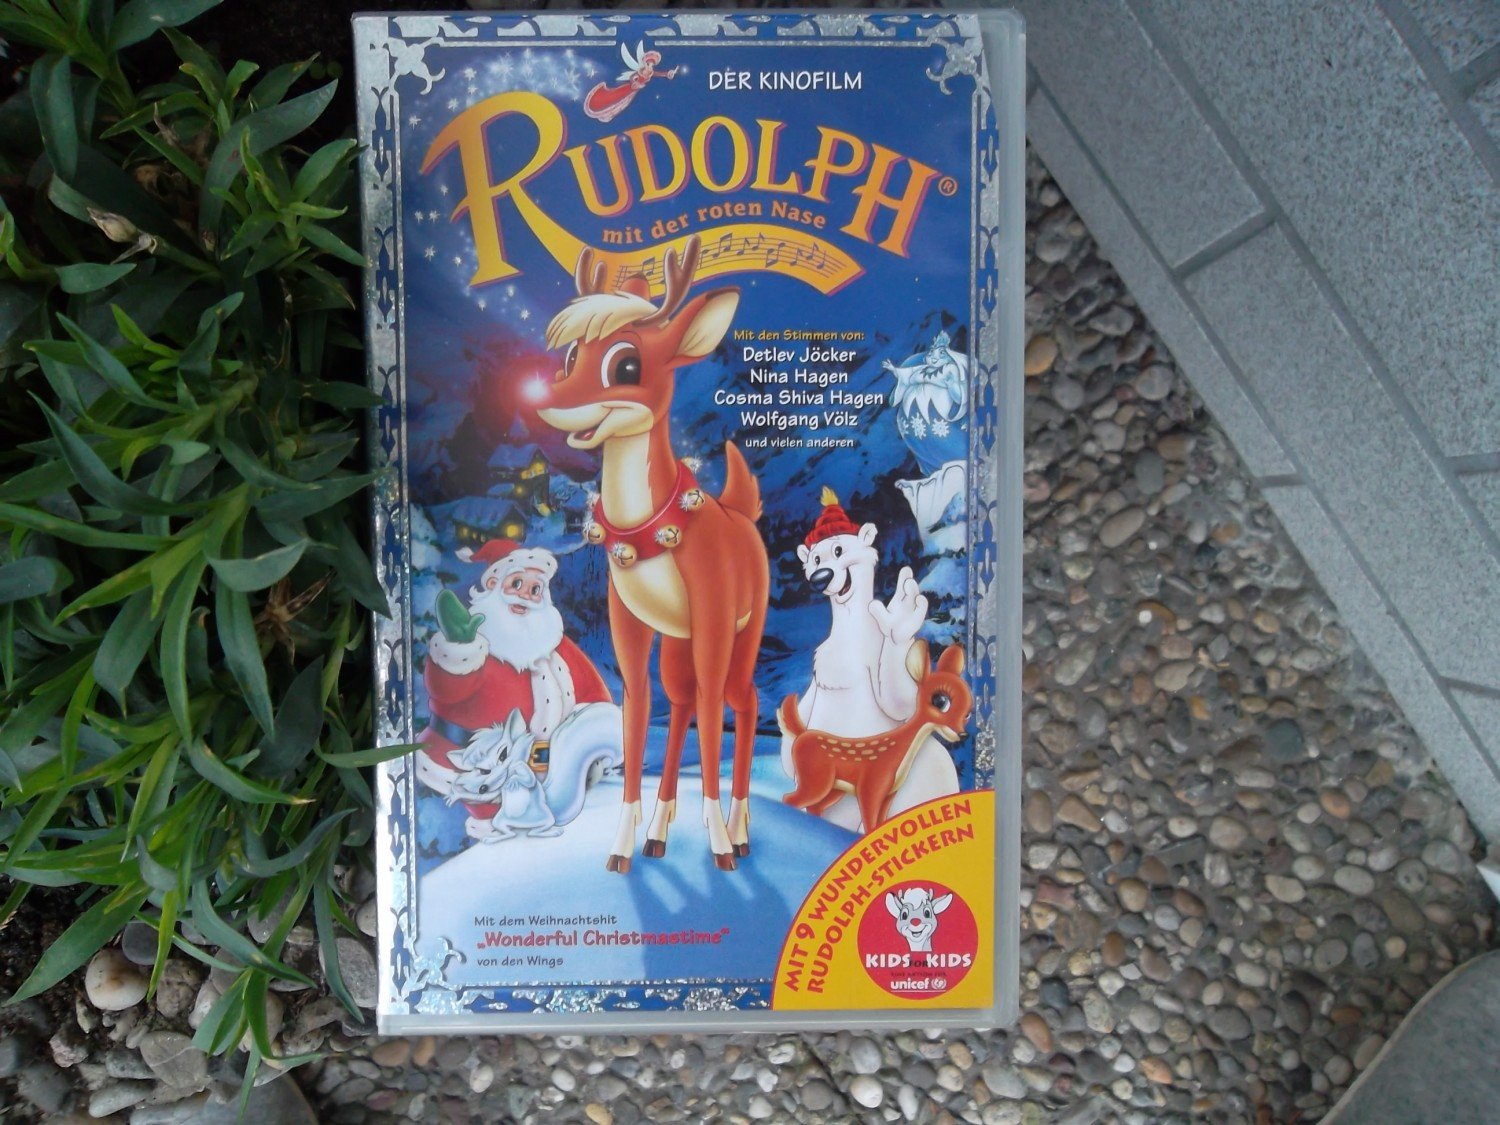 https://images.booklooker.de/x/012ESM/Rudolph-mit-der-roten-Nase-Zeichentrick-Farbfilm-gut-erhaltene-VHS-Kassette.jpg